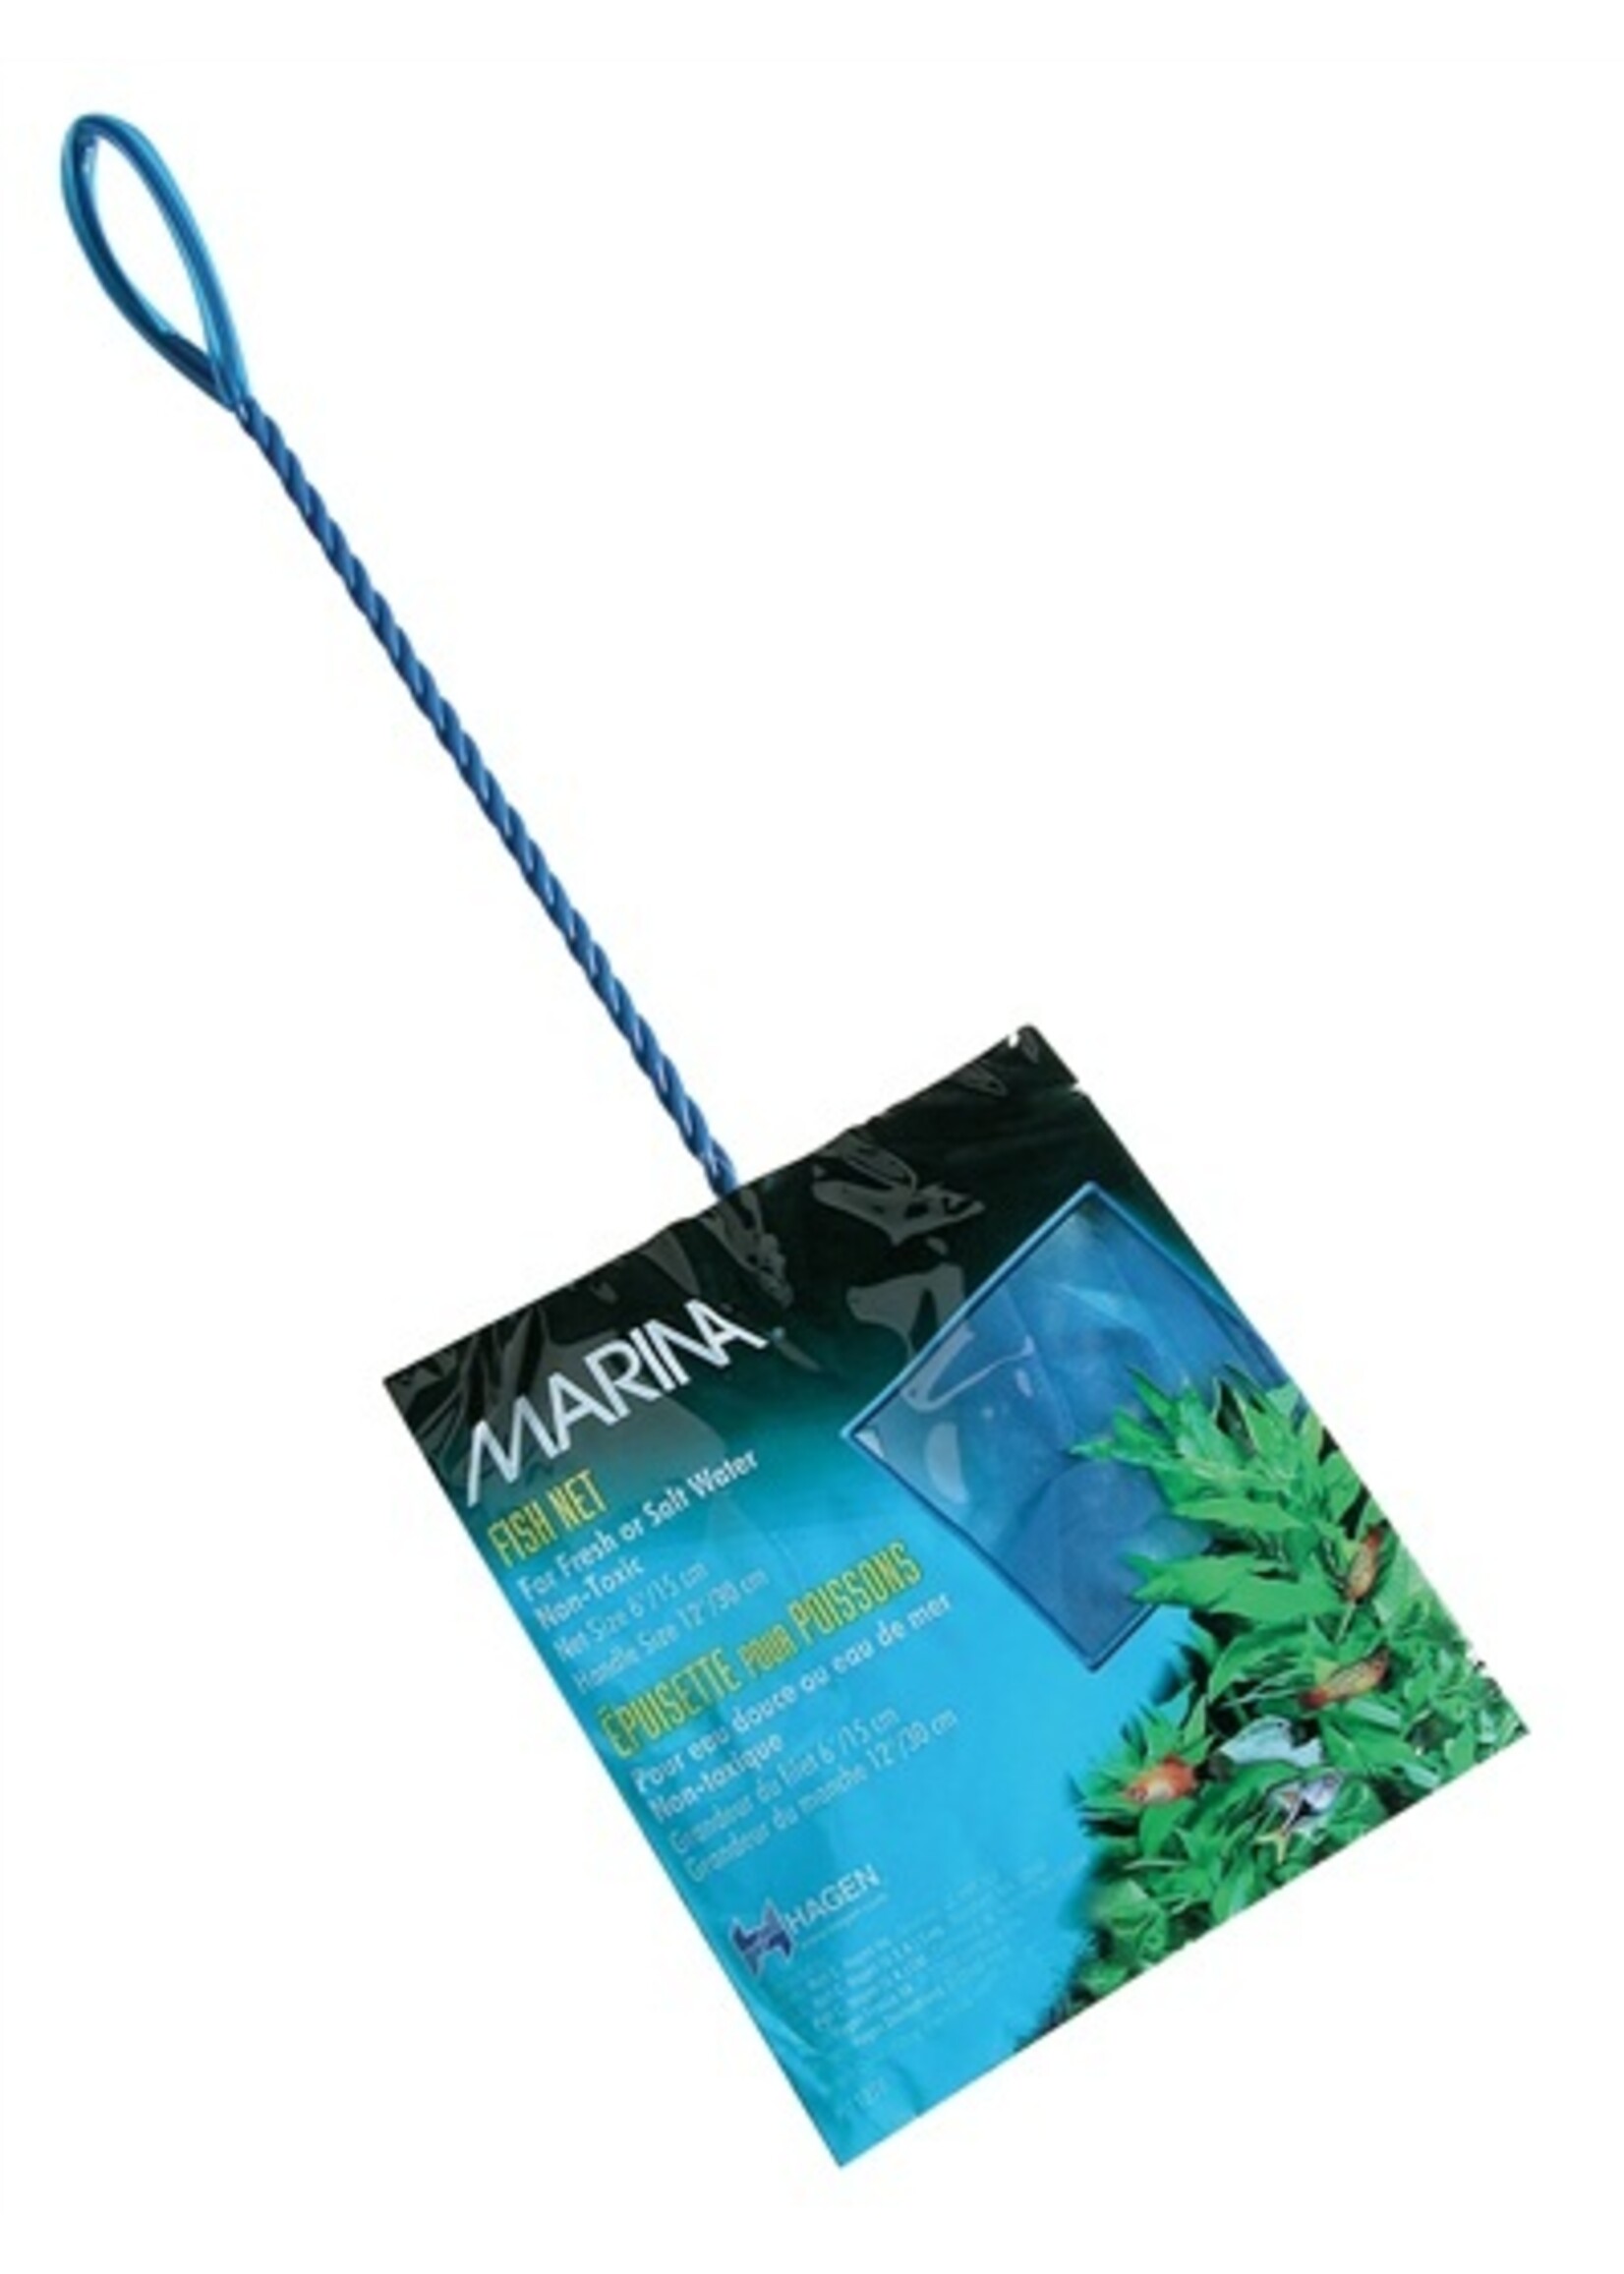 Marina Marina Fish Net Blue